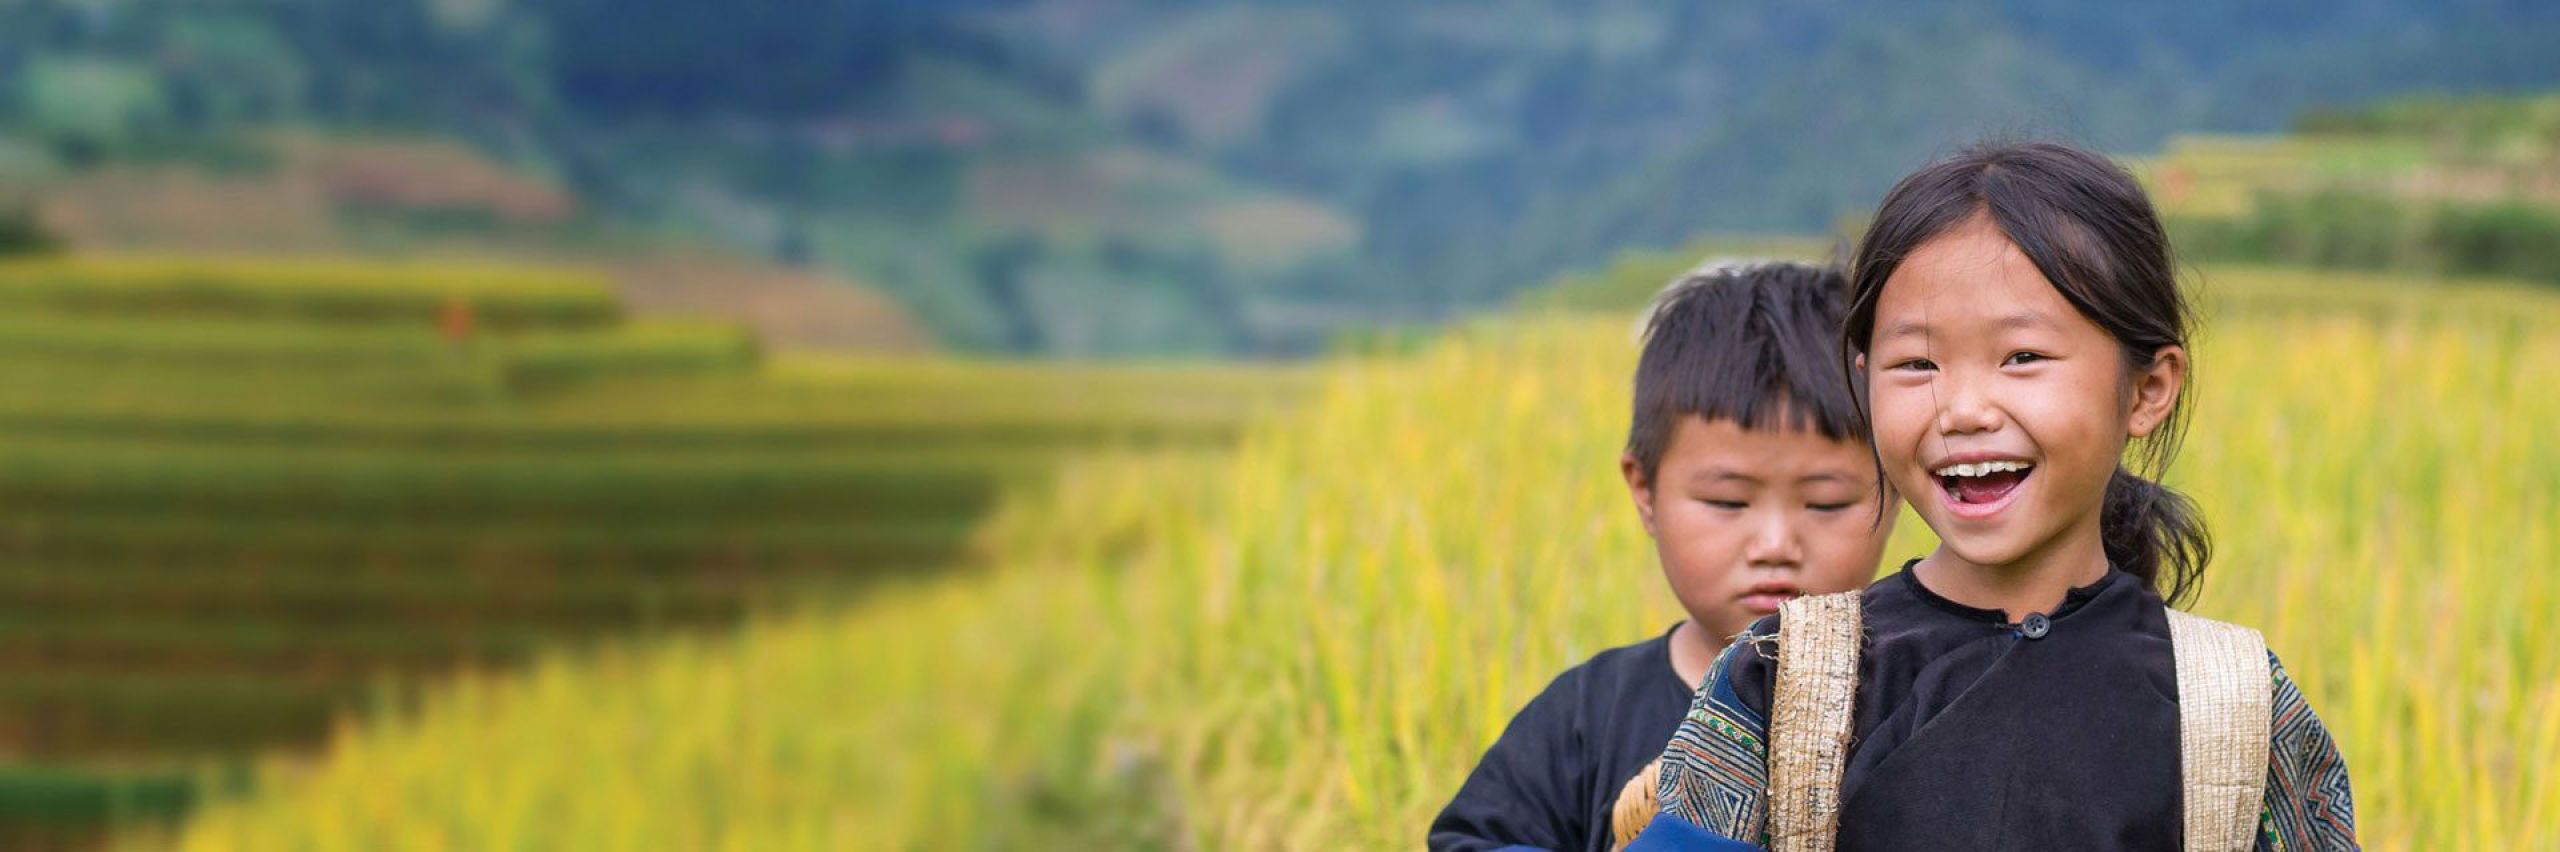 The Dariu Foundation - Header Bild- Digitale Bildung für alle - zwei Kinder im Reisfeld